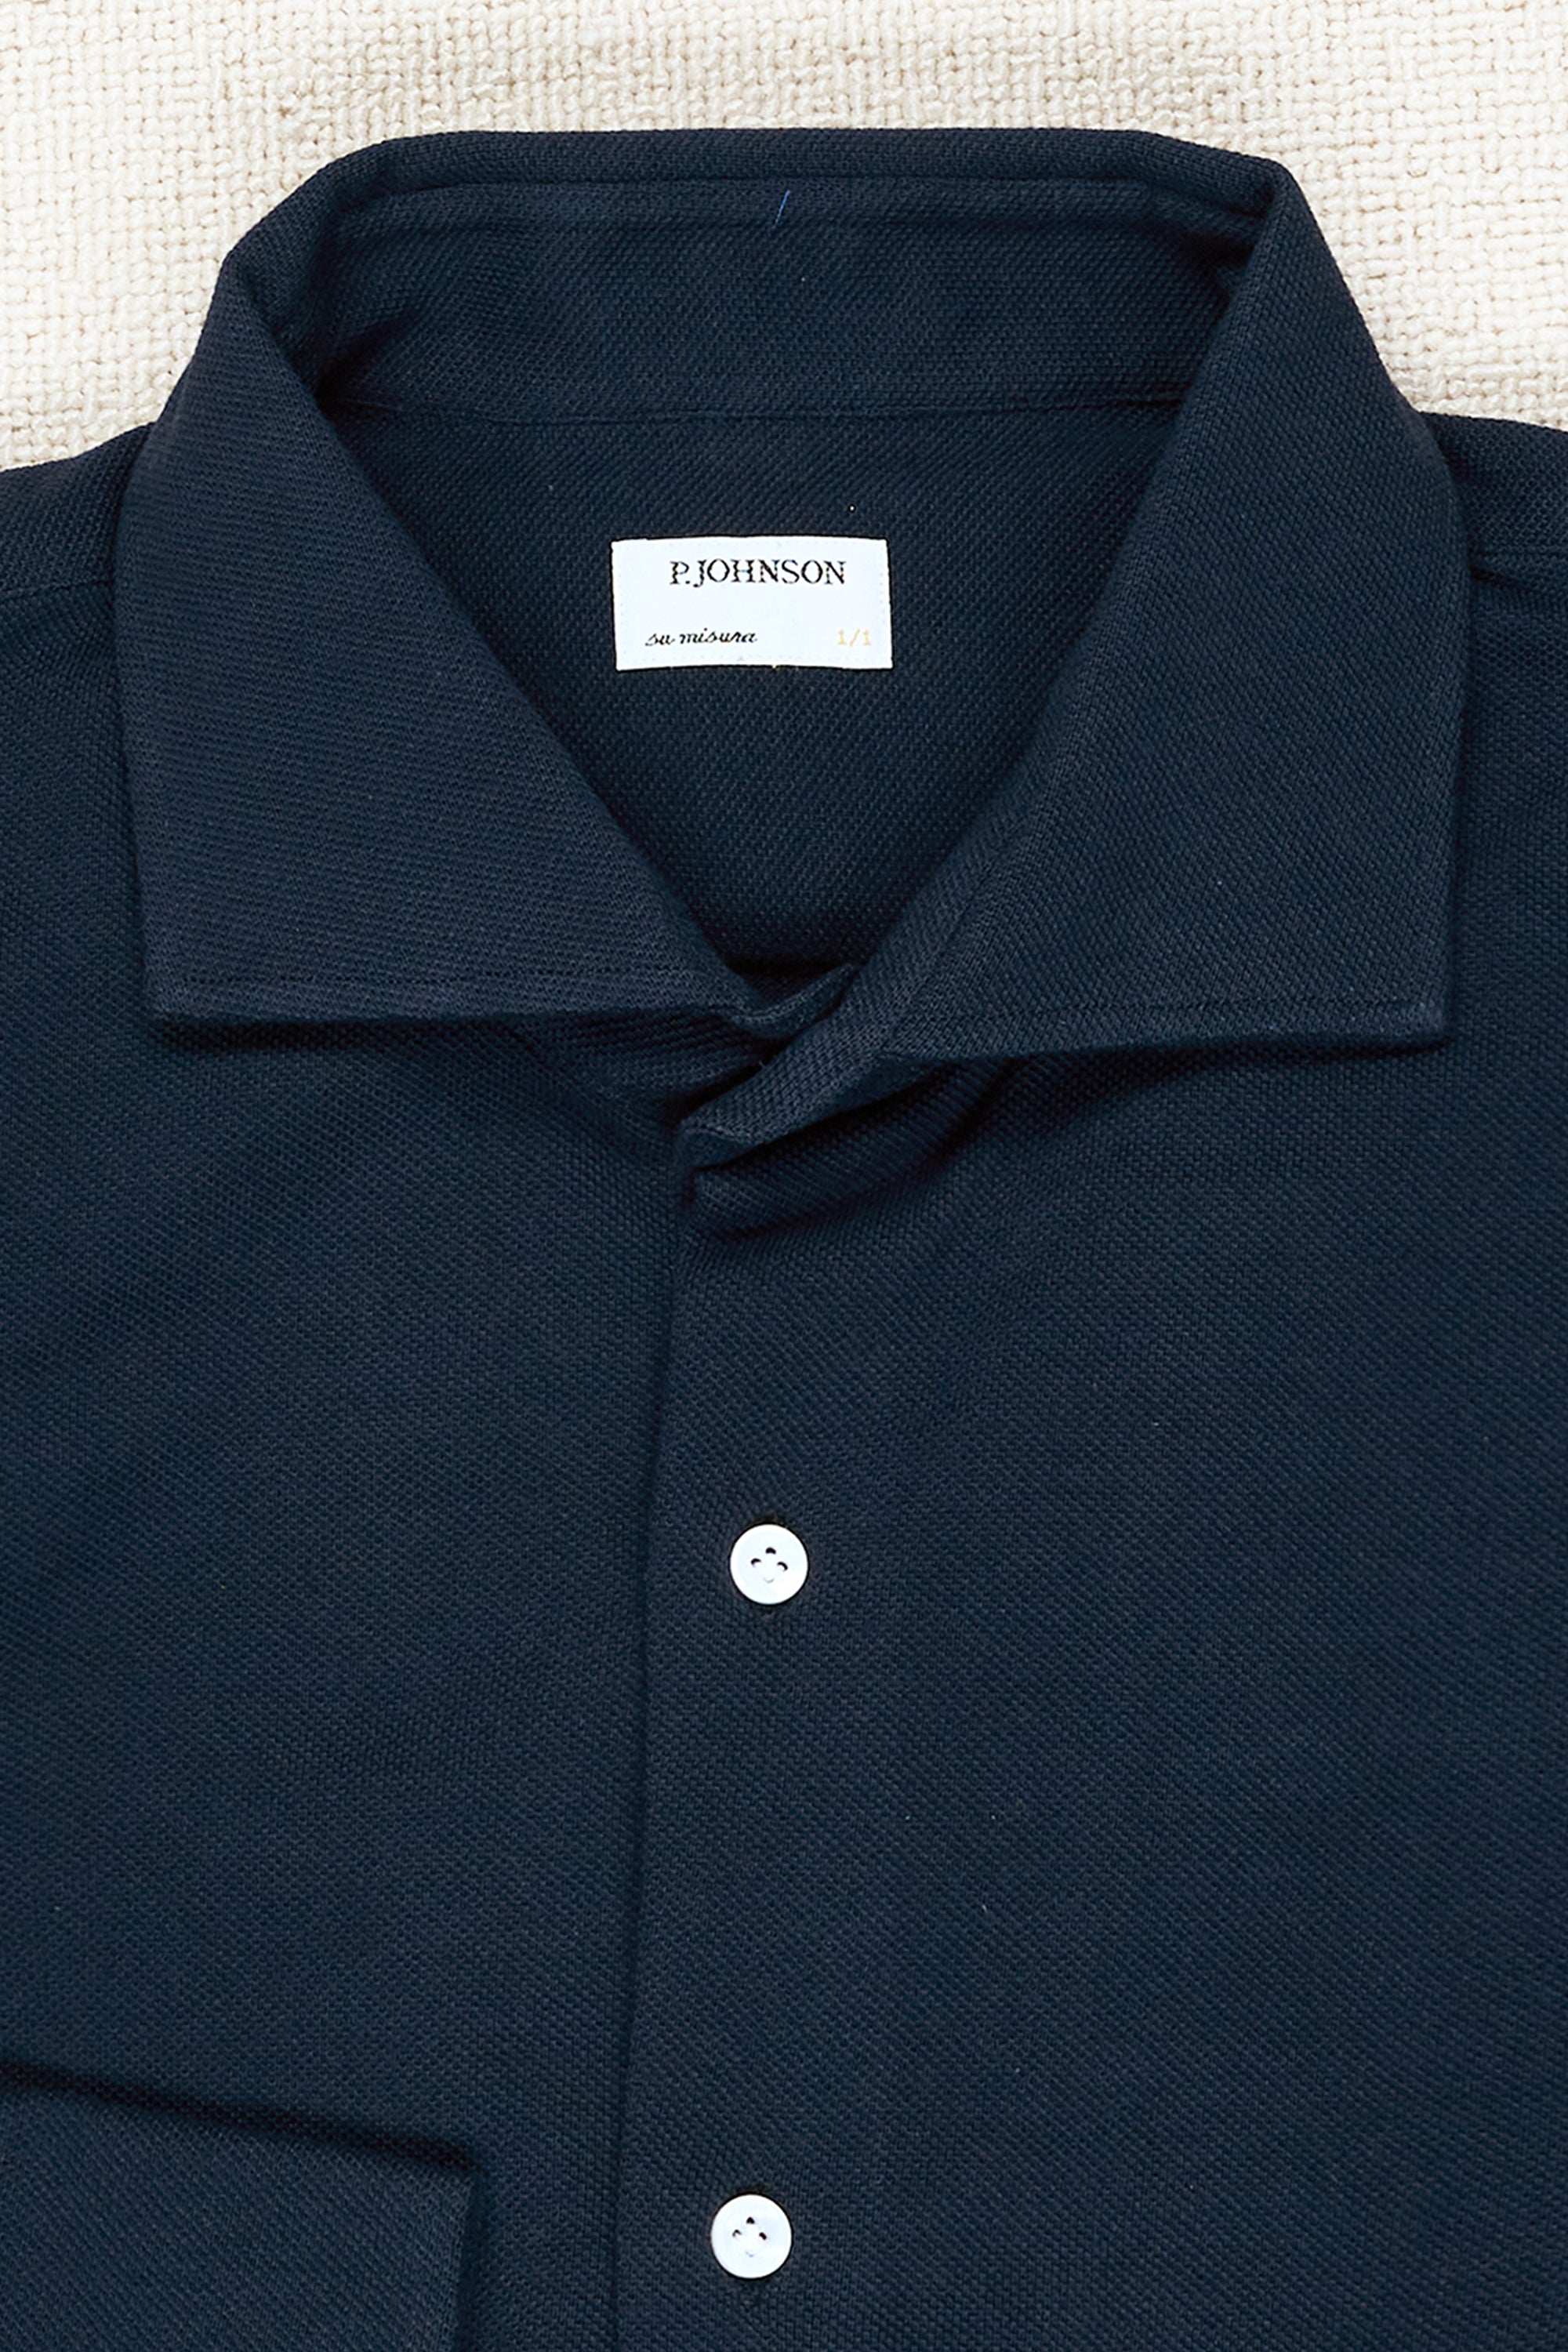 P. Johnson Navy Cotton Pique Spread Collar Shirt